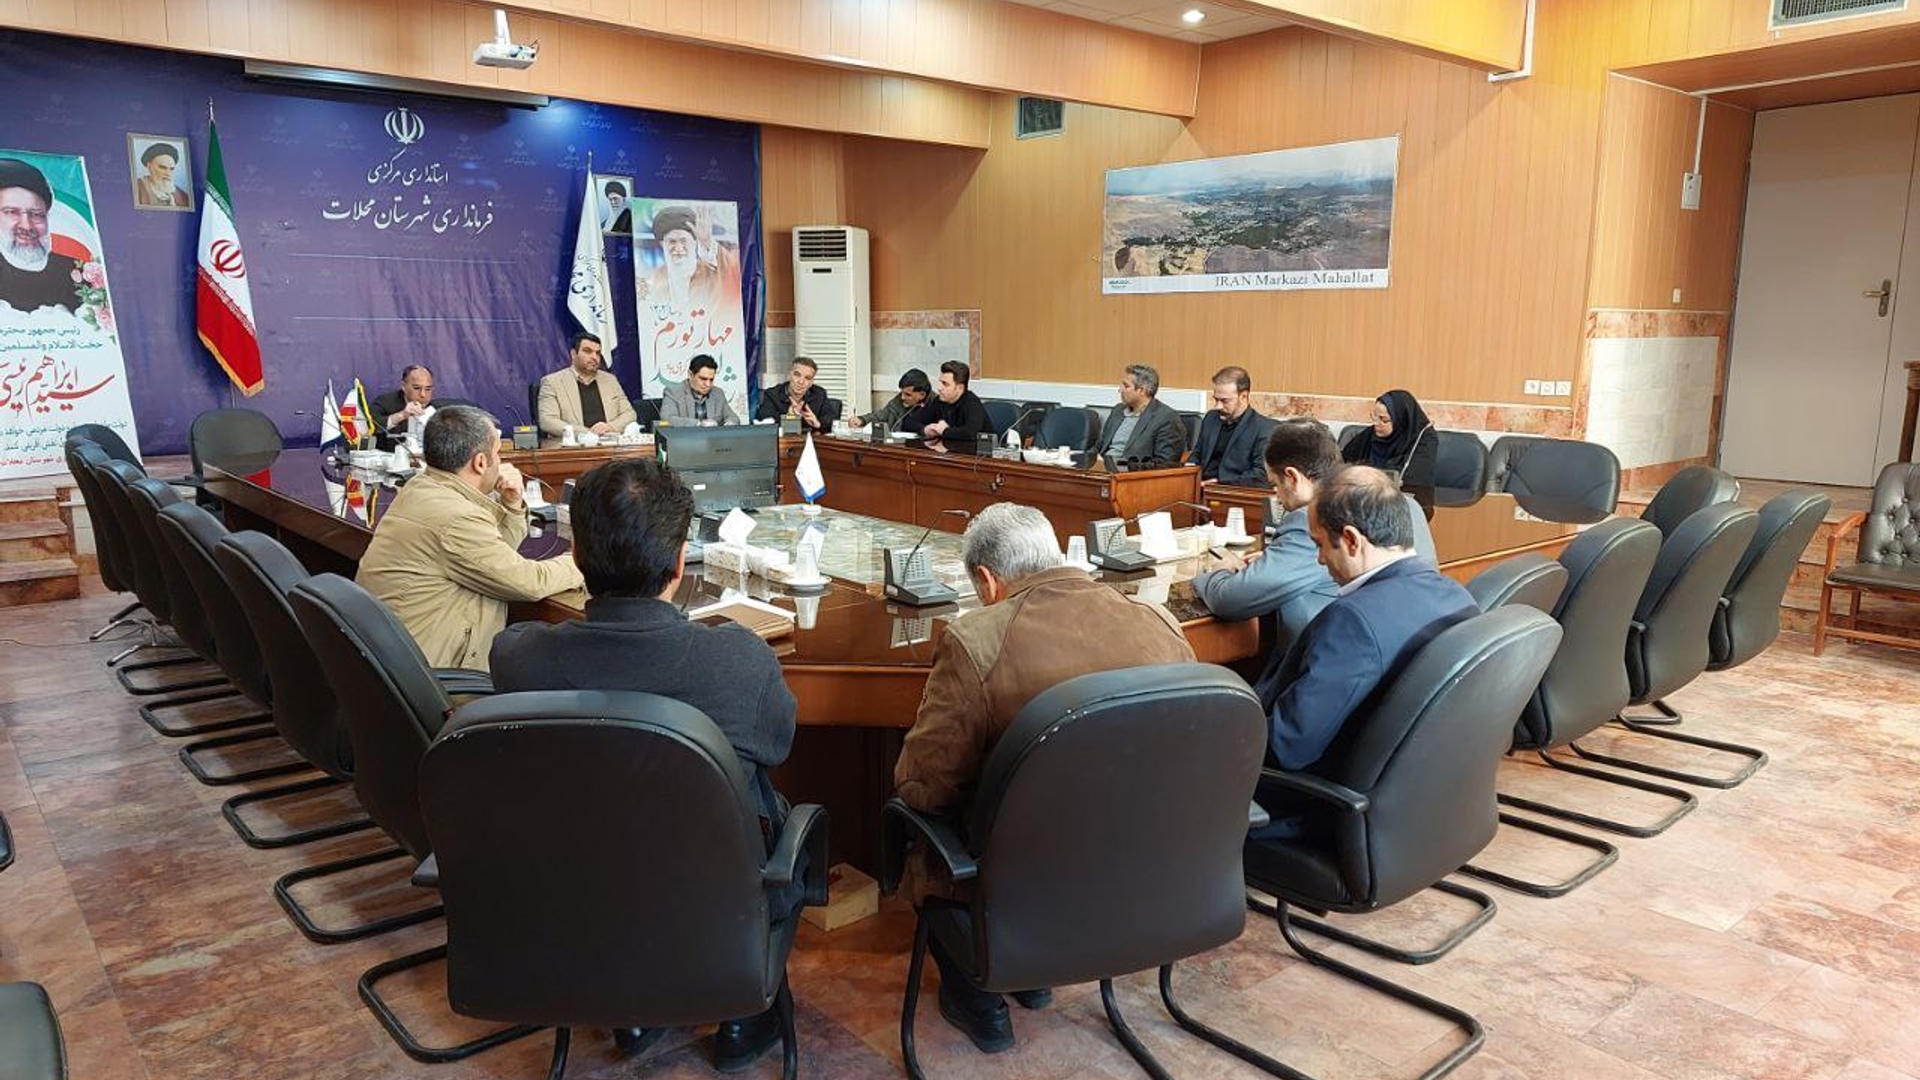 جلسه مشترک شورای ورزش همگانی و شورای ساماندهی امور جوانان شهرستان محلات برگزار شد.